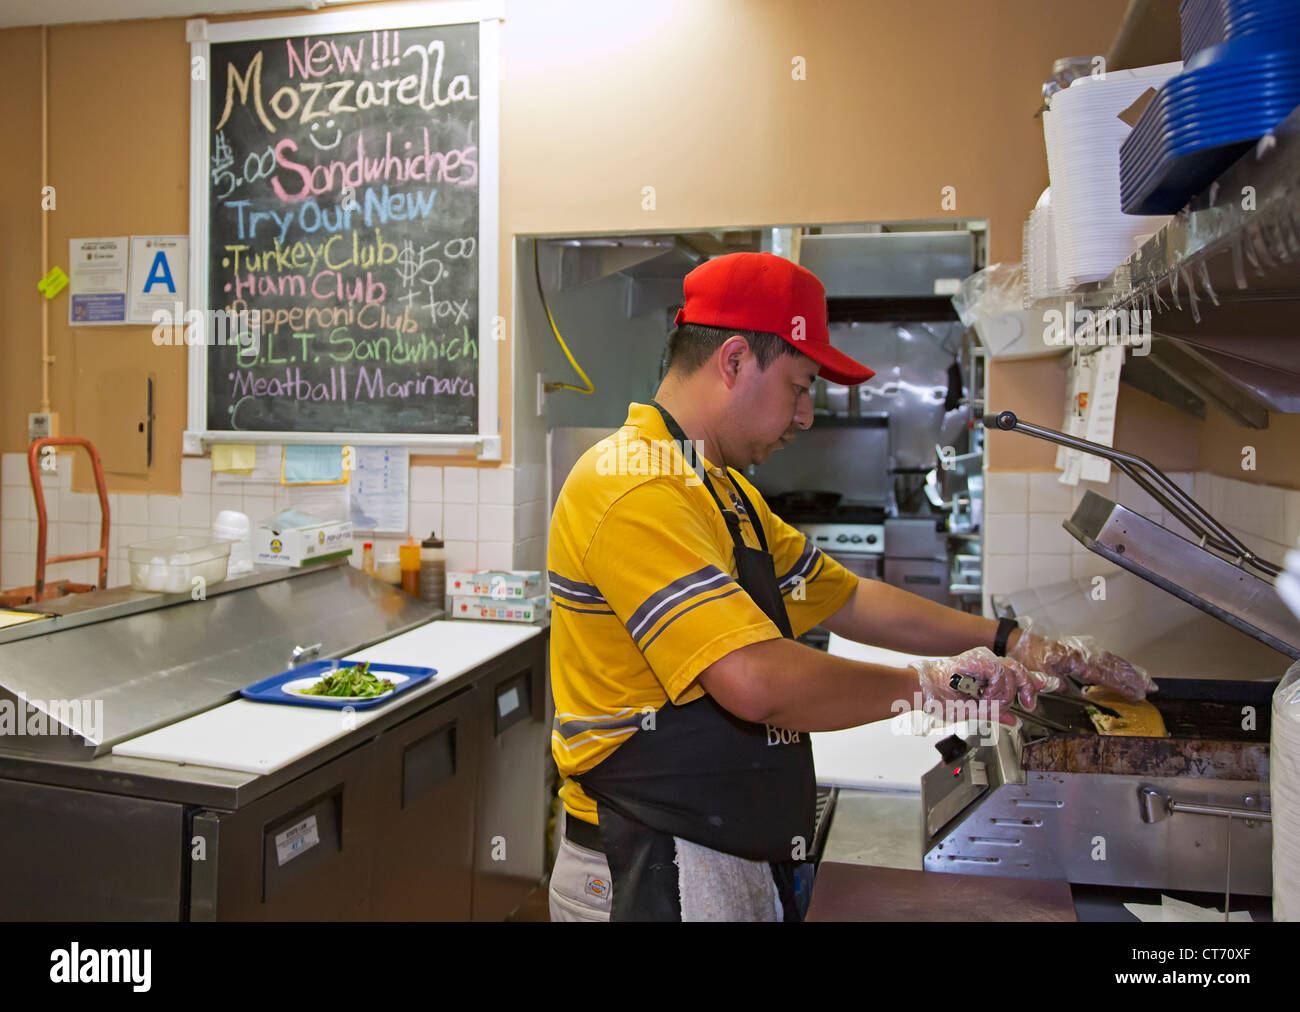 Los Angeles, Kalifornien - ein Arbeiter macht einen Sandwich in einem Fast-Food-Shop in Los Angeles Modeviertel. Stockfoto